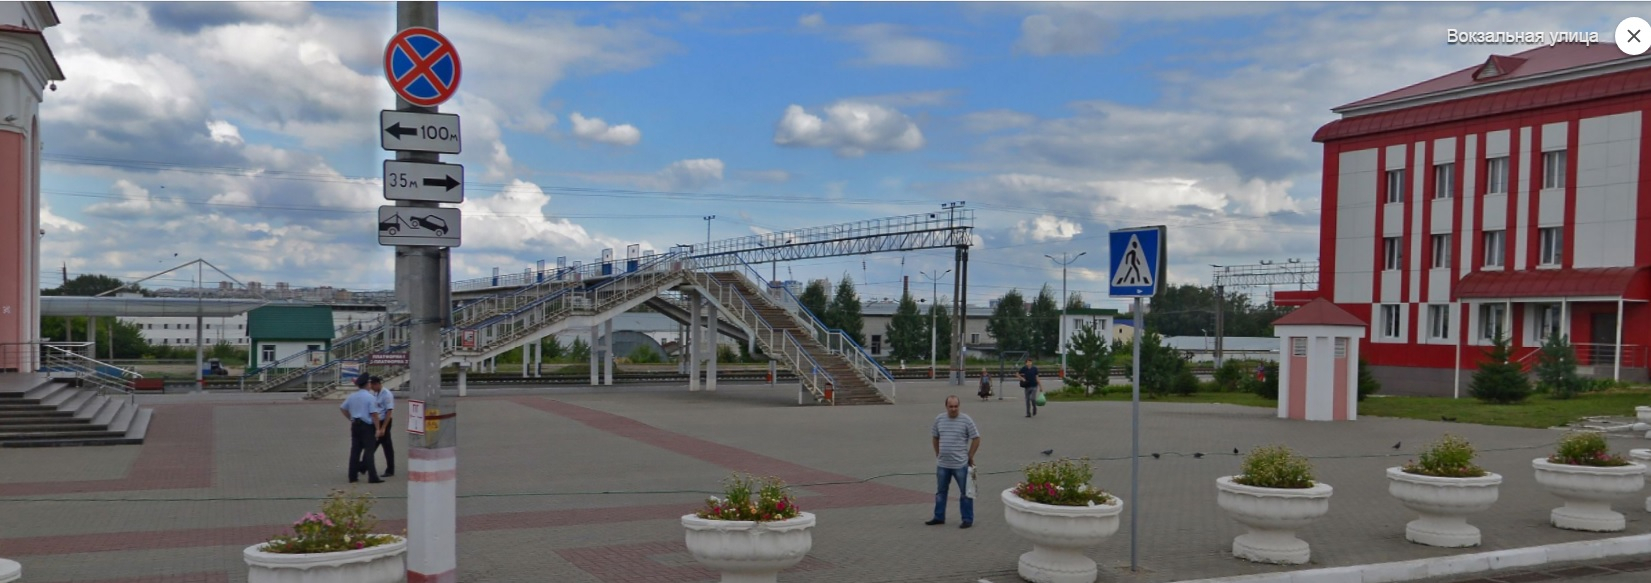 В Саранске начнутся работы по модернизации железнодорожного пешеходного перехода